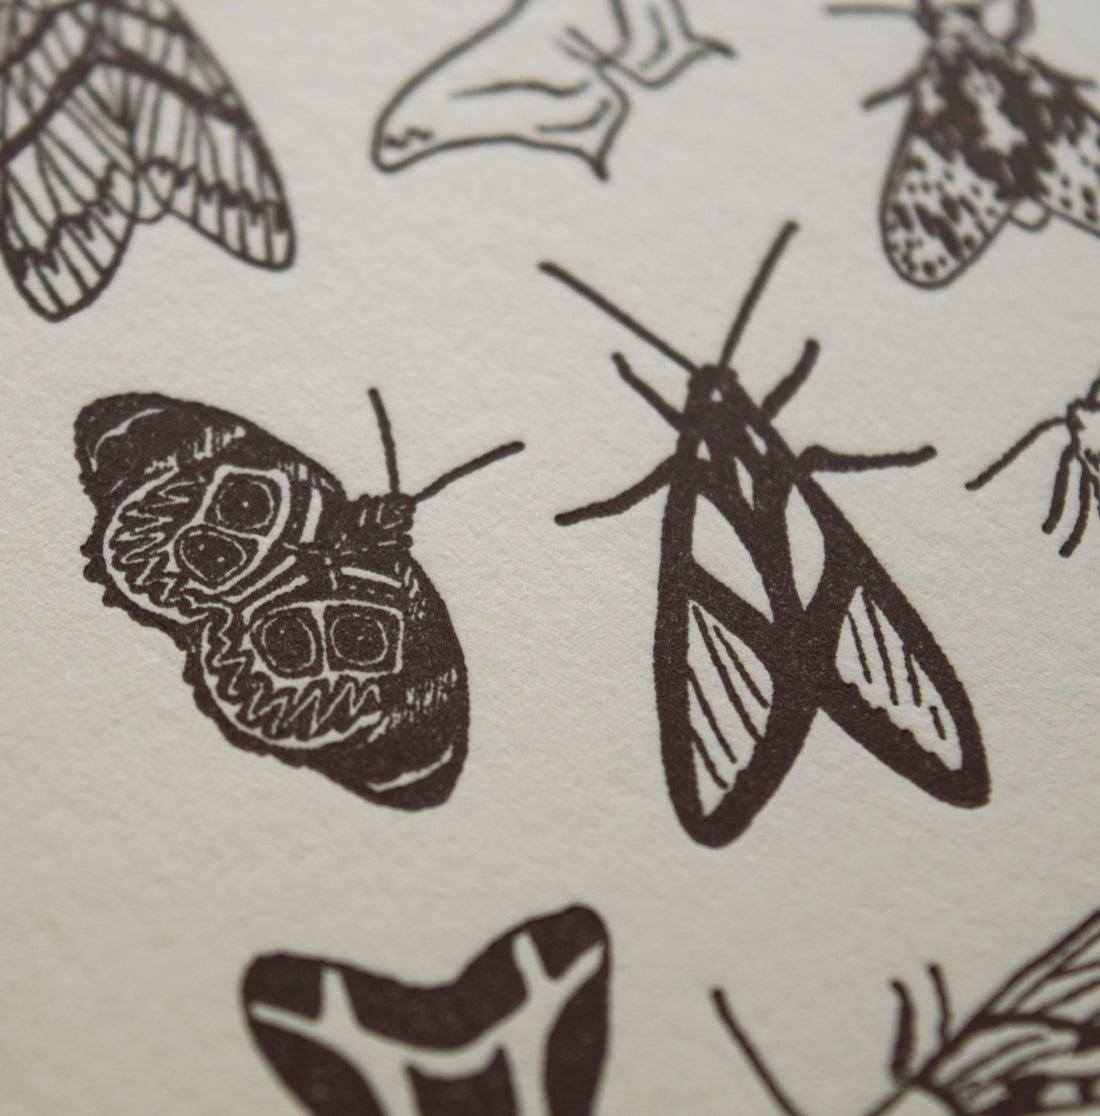 Detailed photo of letterpress print depicting moth varieties in black ink